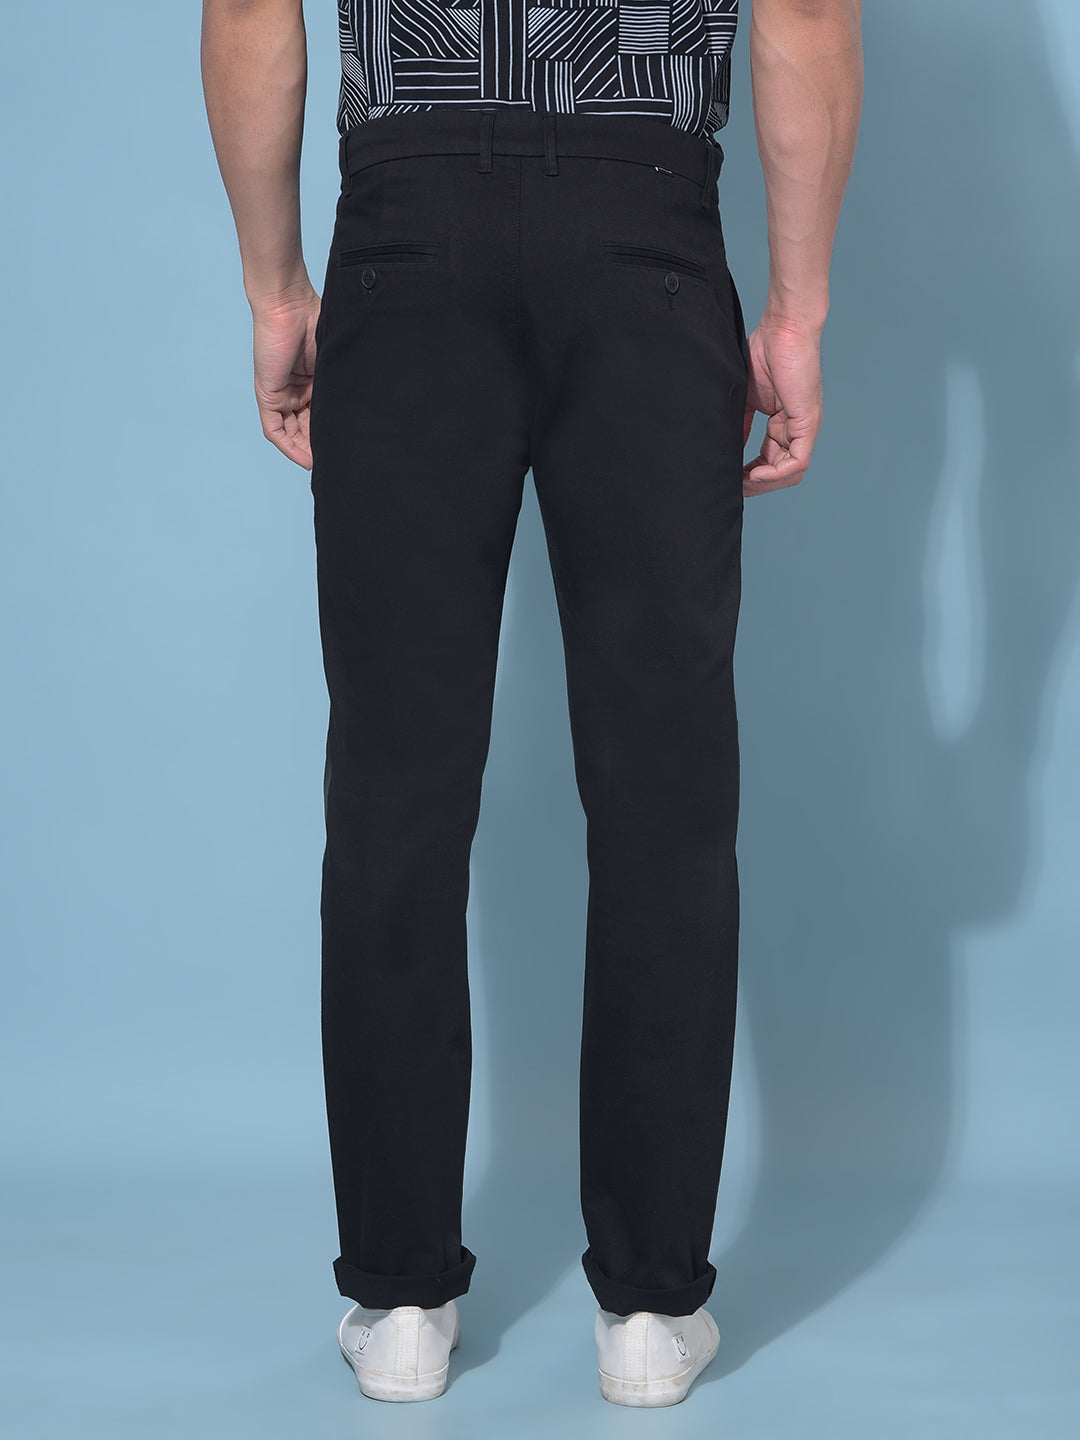 Black Stretchable Cotton Trousers-Men Trousers-Crimsoune Club